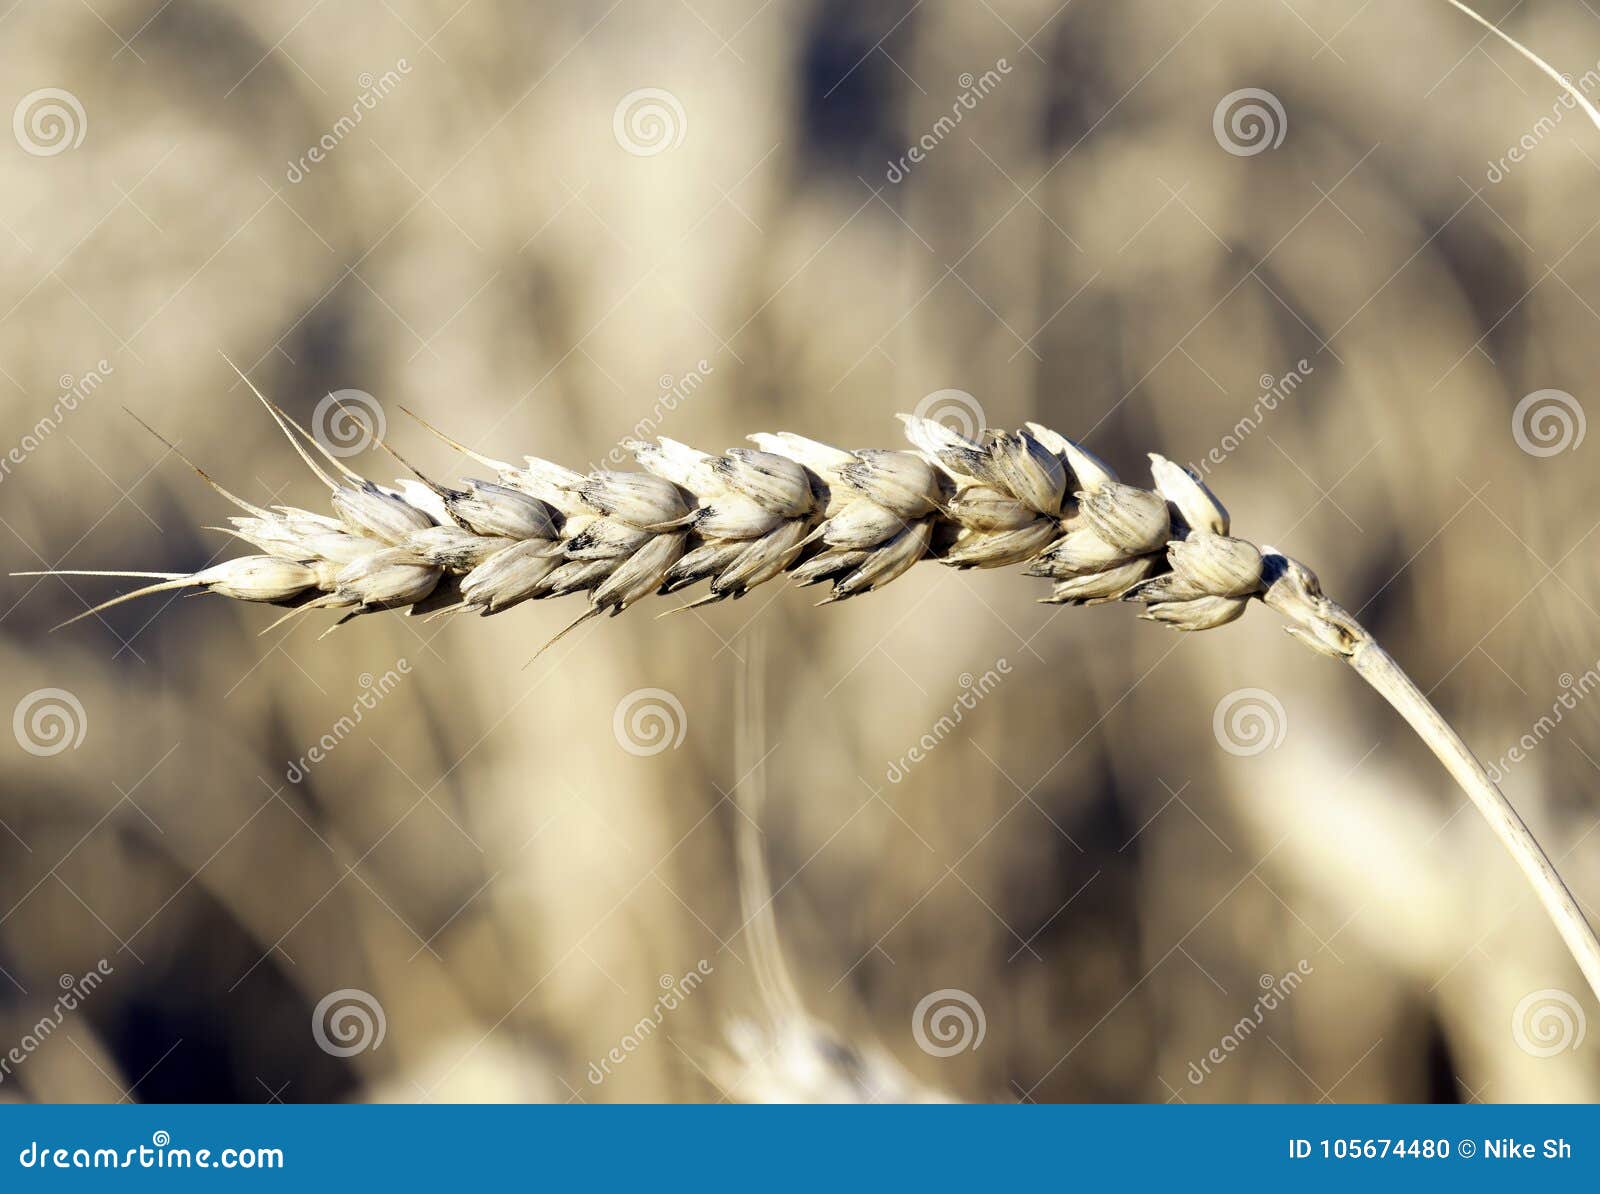 Cosse de blé photo stock. Image du farine, texture, largement